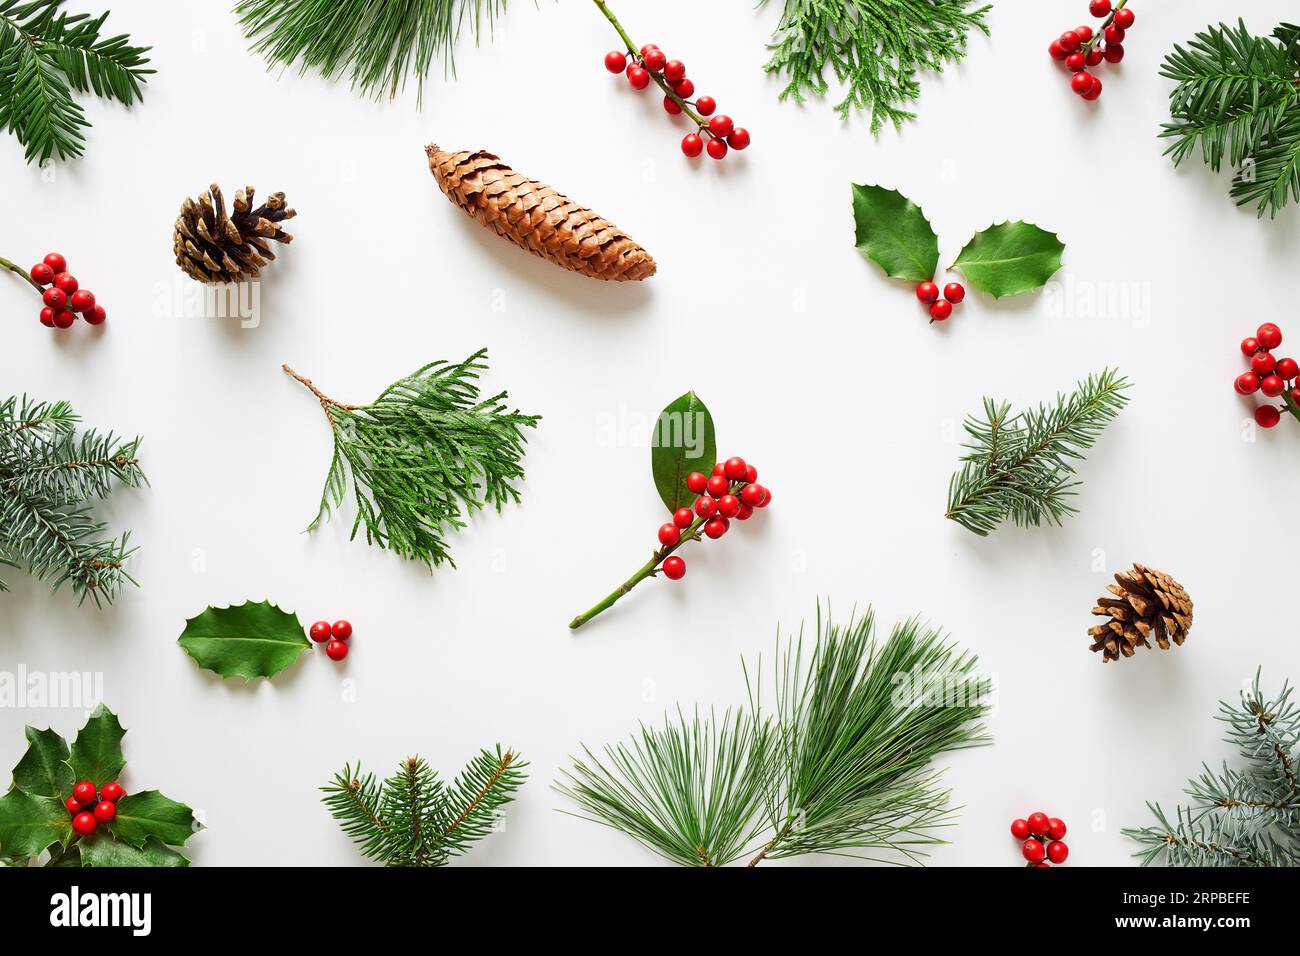 Sammlung dekorativer Weihnachtspflanzen mit grünen Blättern und stechpalmenbeeren. Natürliche Winterdekoration. Stockfoto